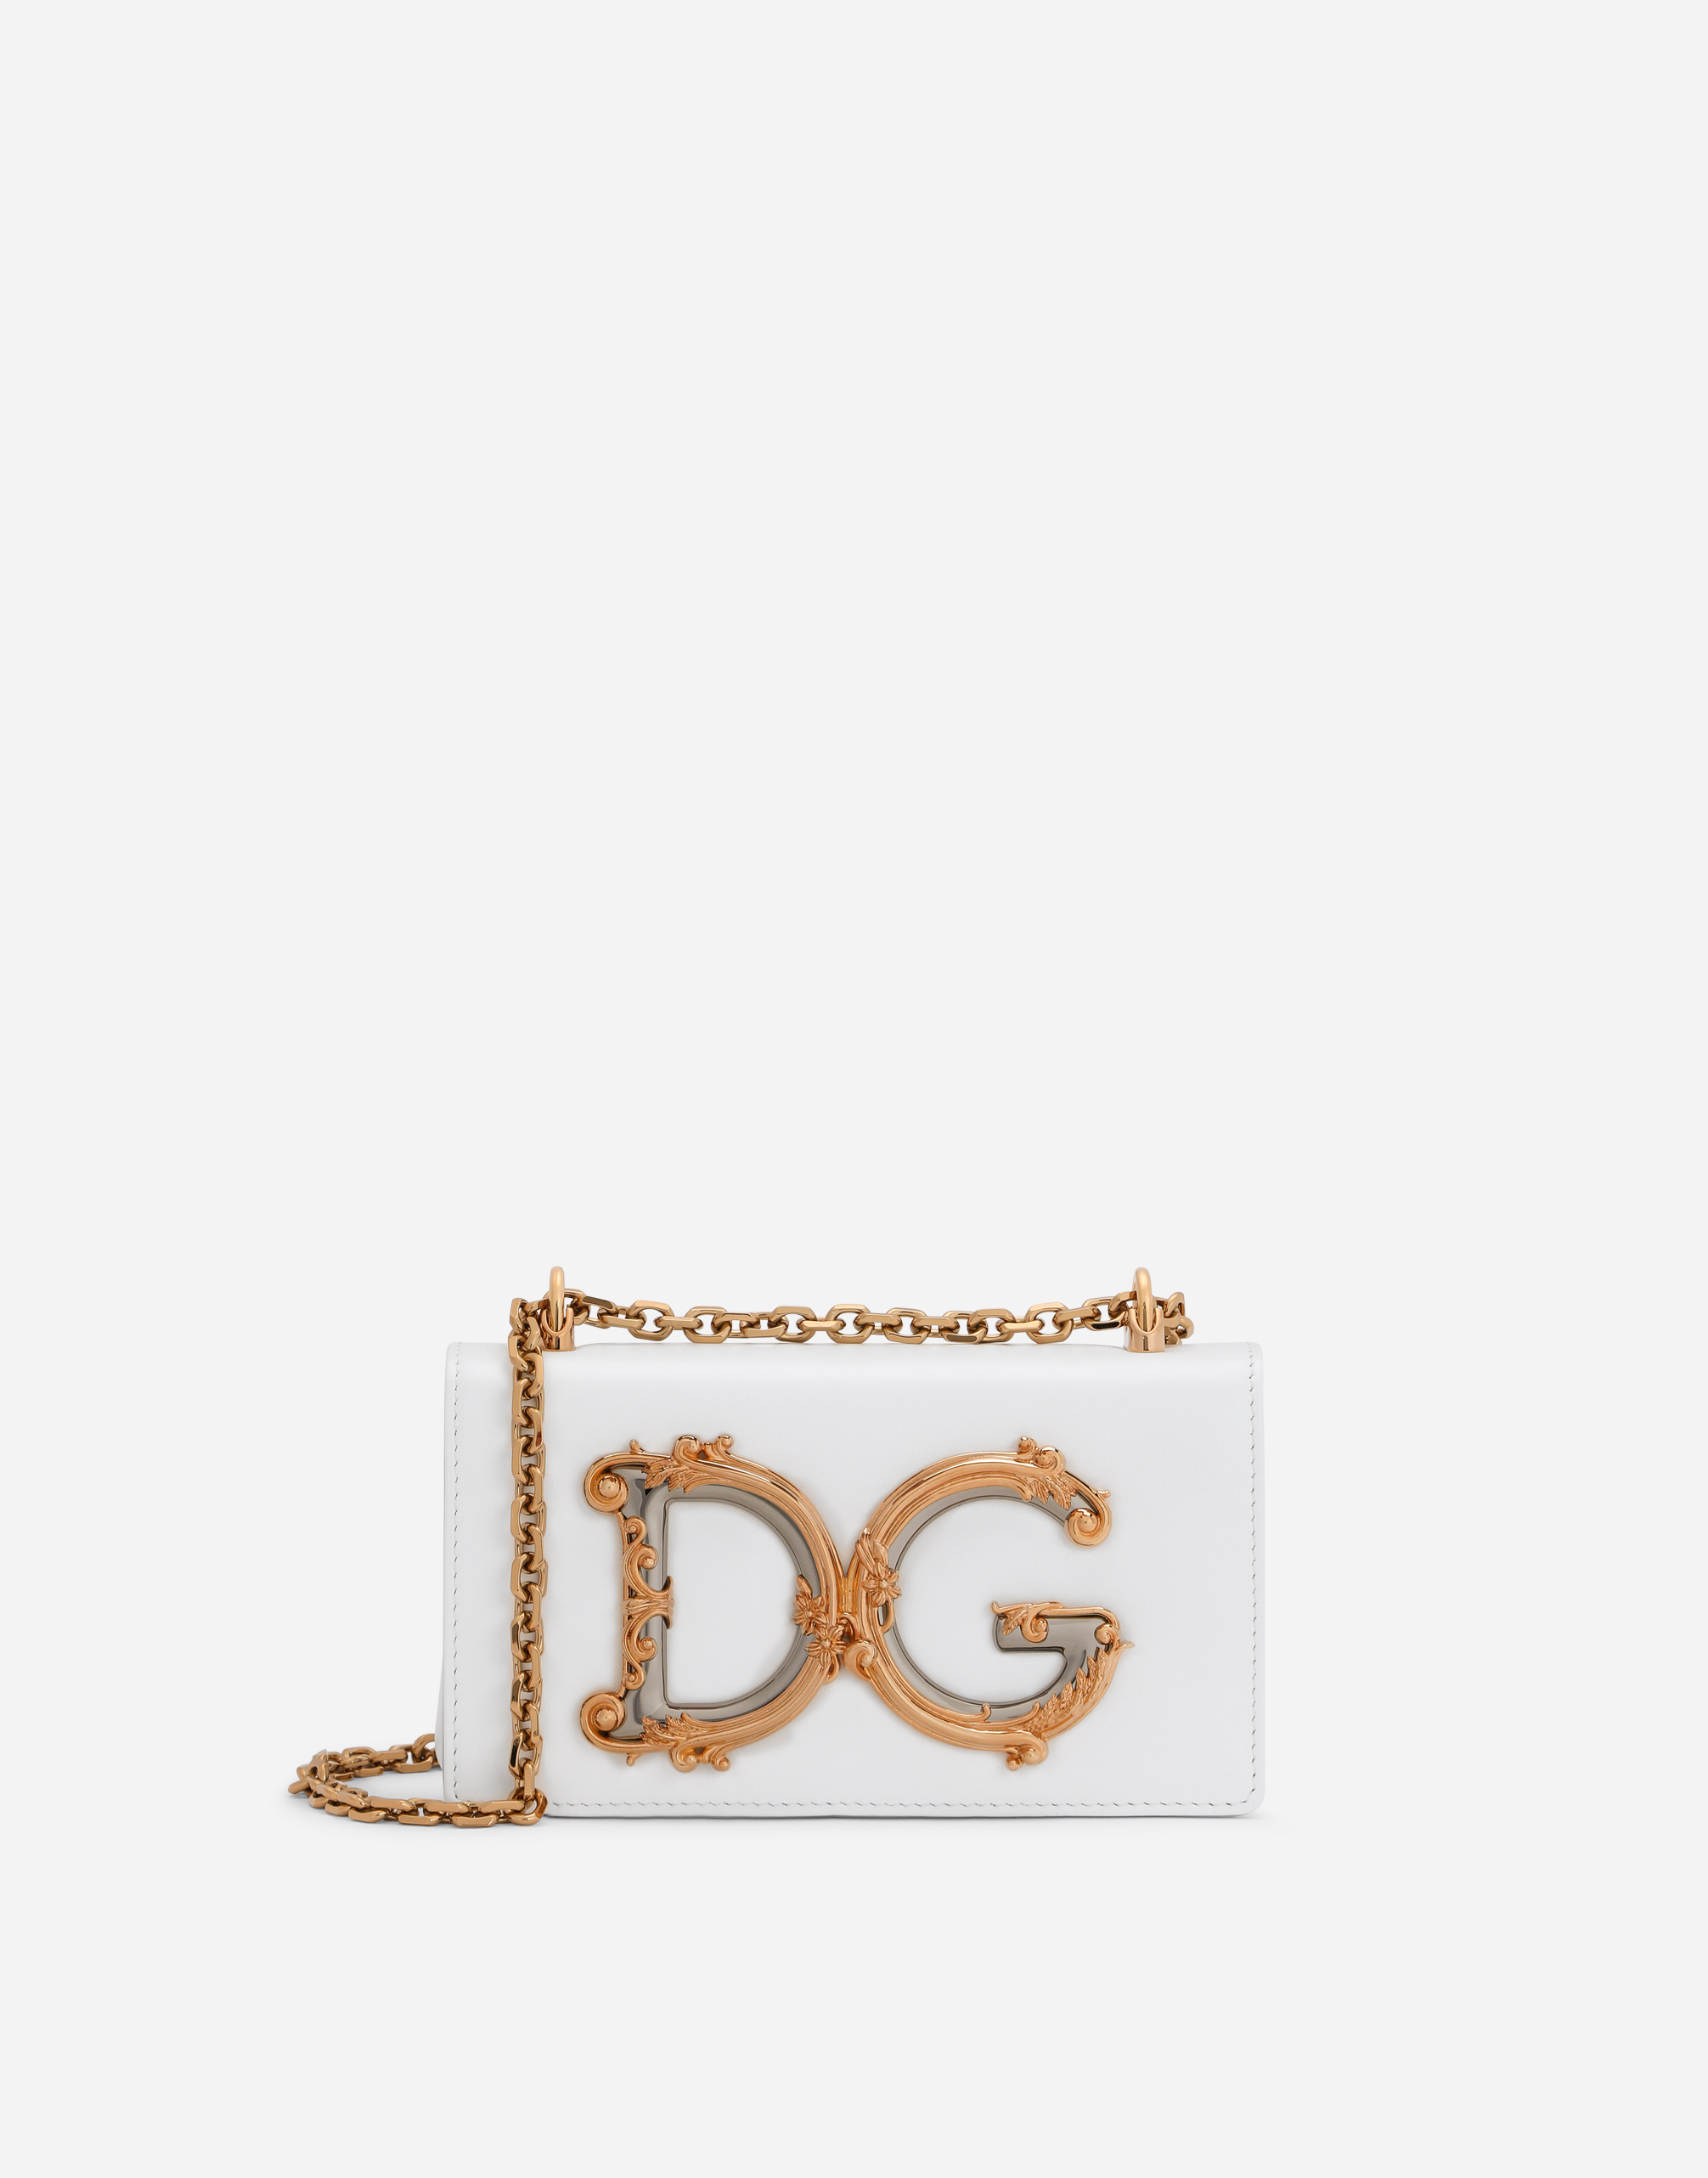 Calfskin DG girls phone bag in White